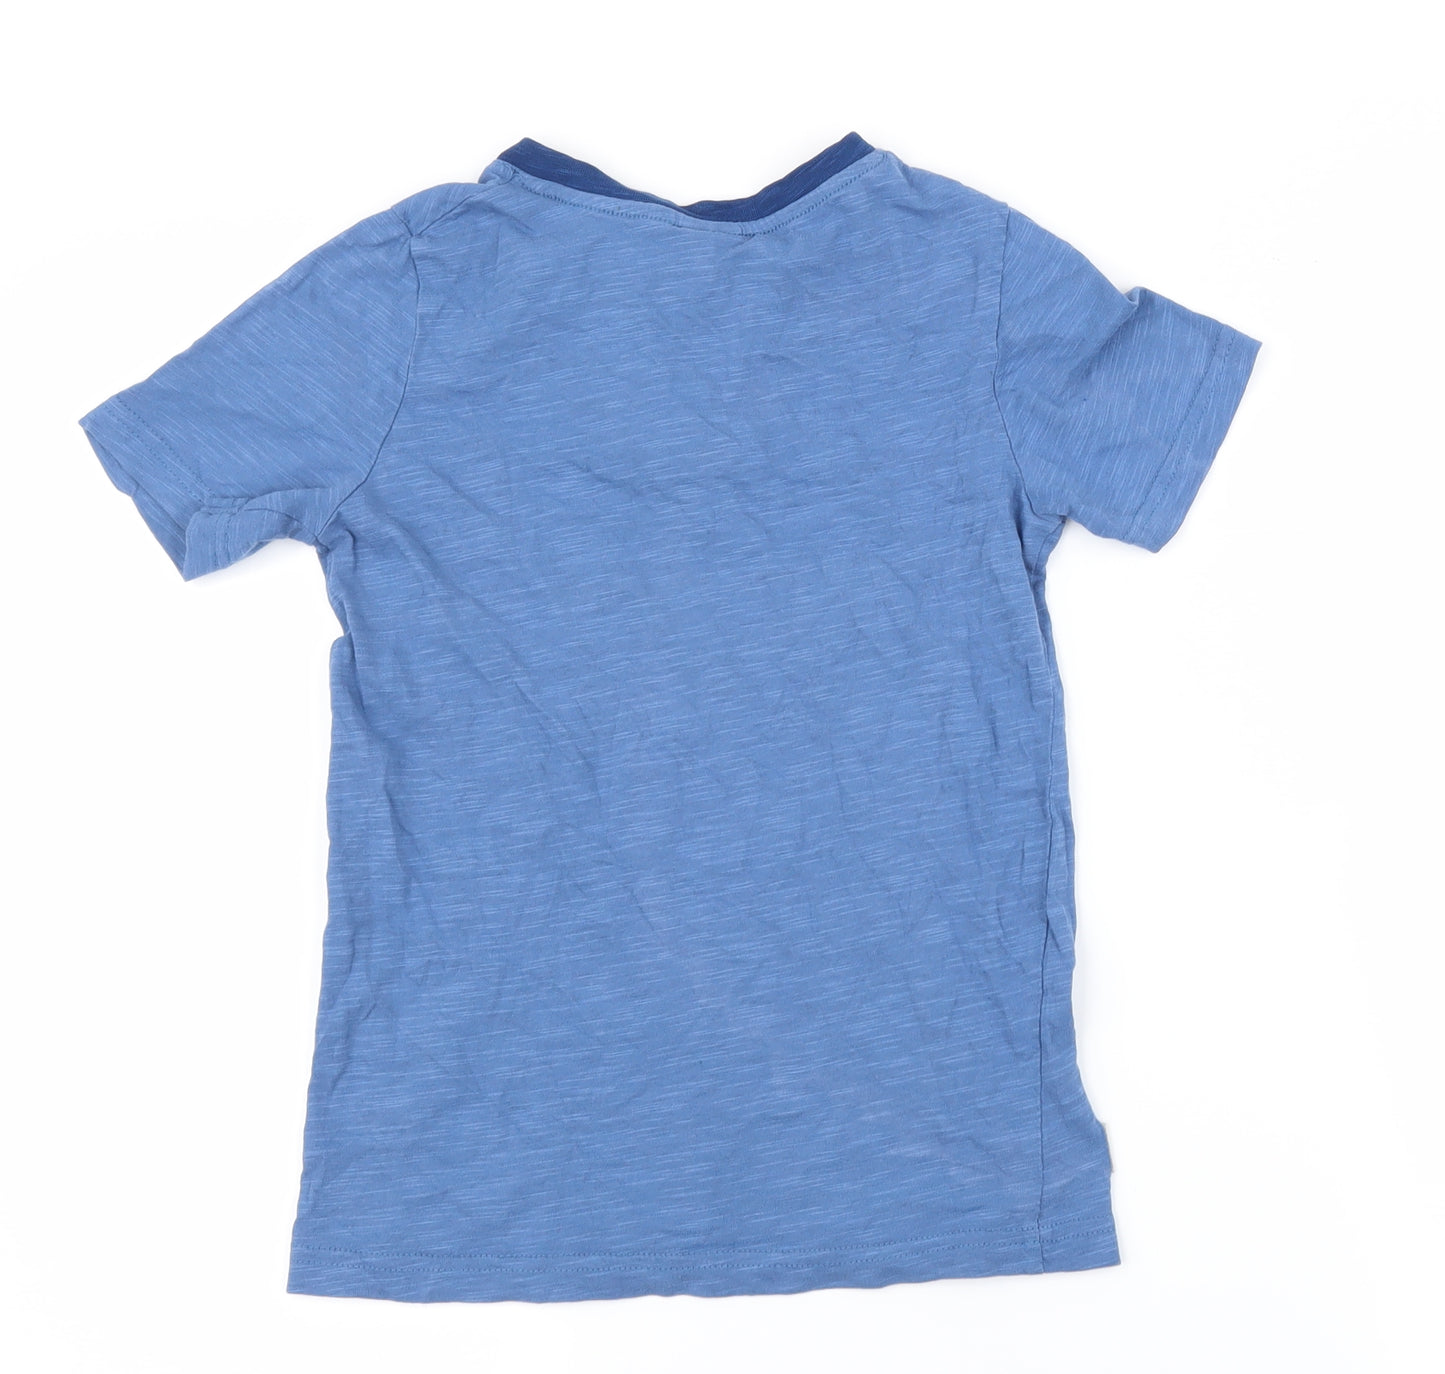 Palomino Boys Blue   Basic T-Shirt Size 5-6 Years